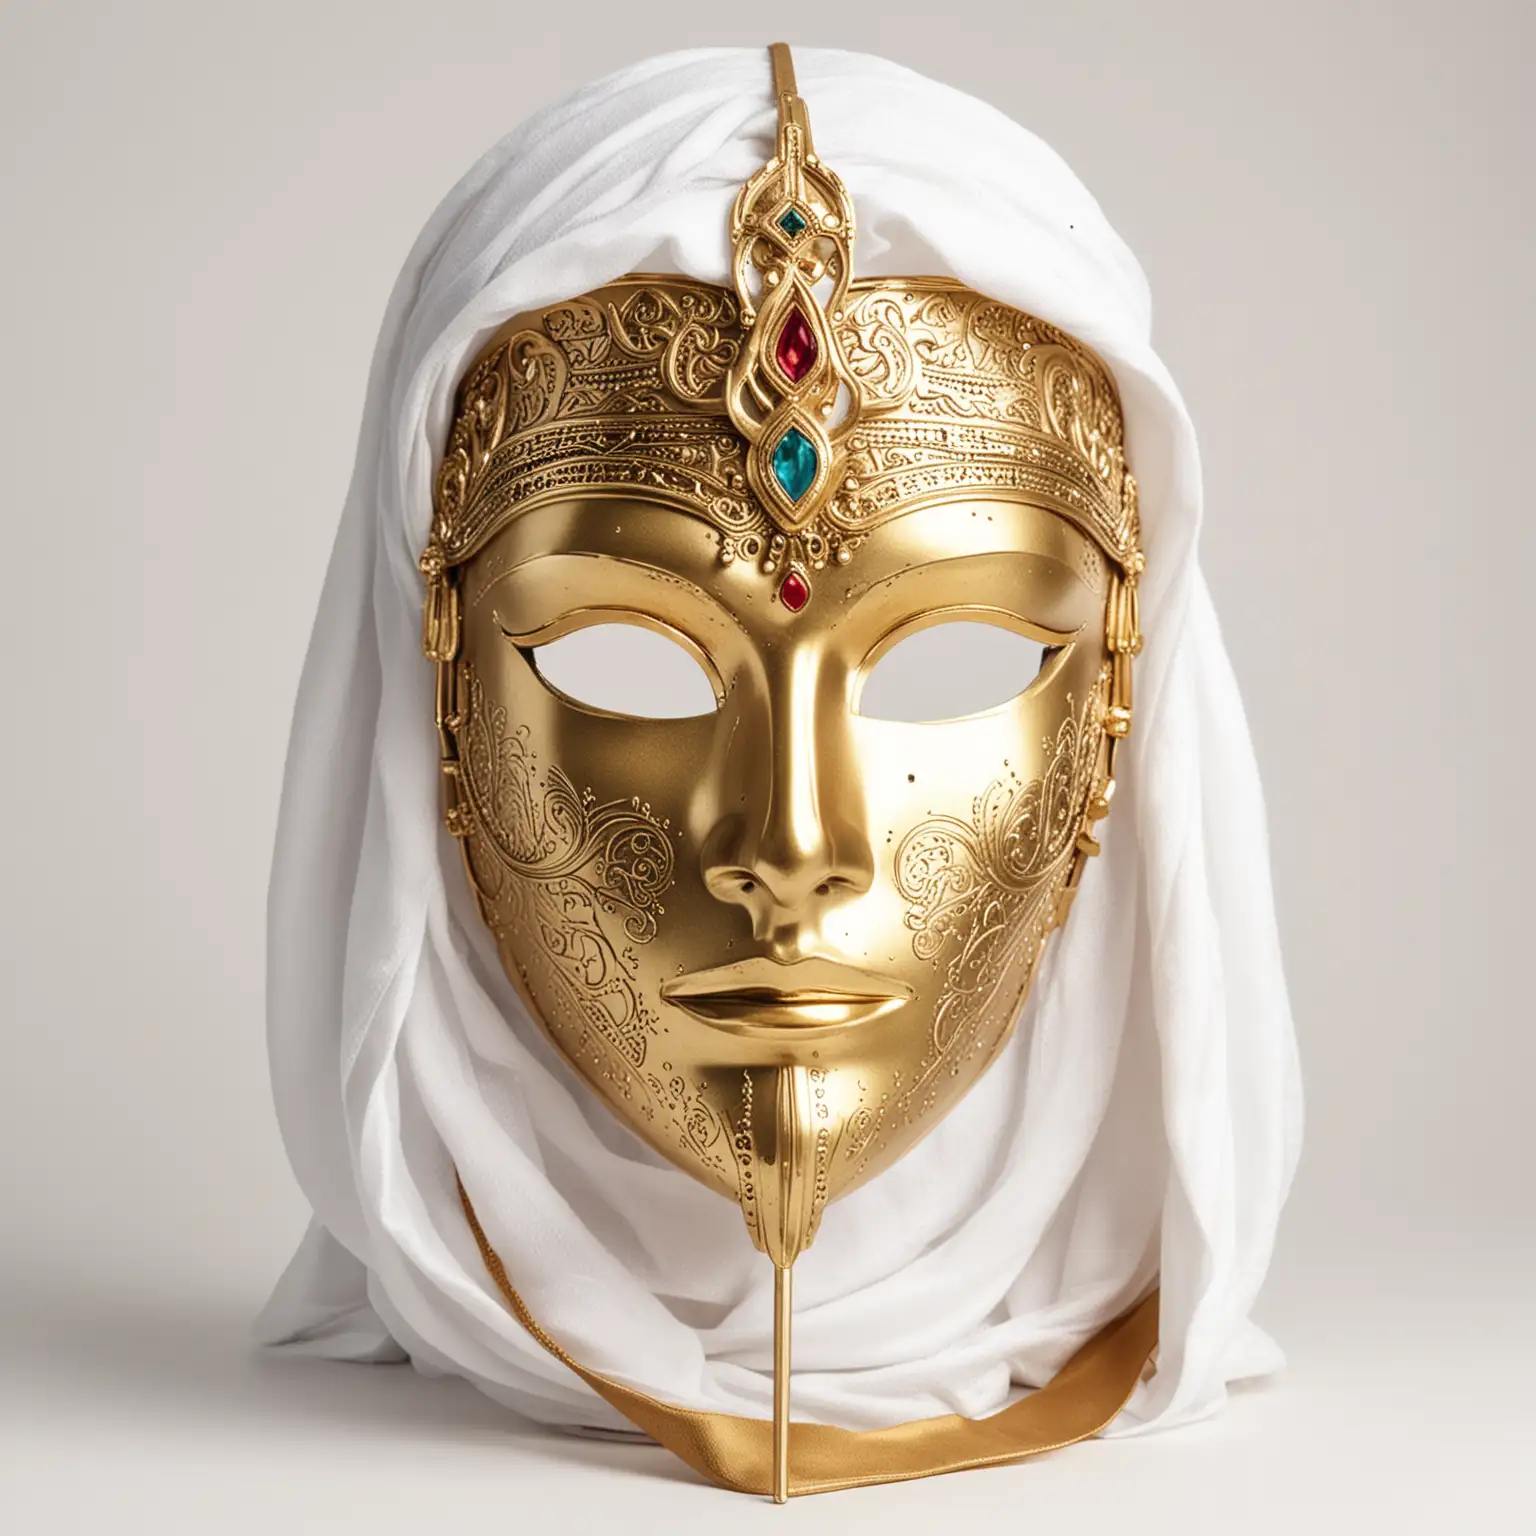 Arabian Golden Mask in High Contrast Lighting on White Background